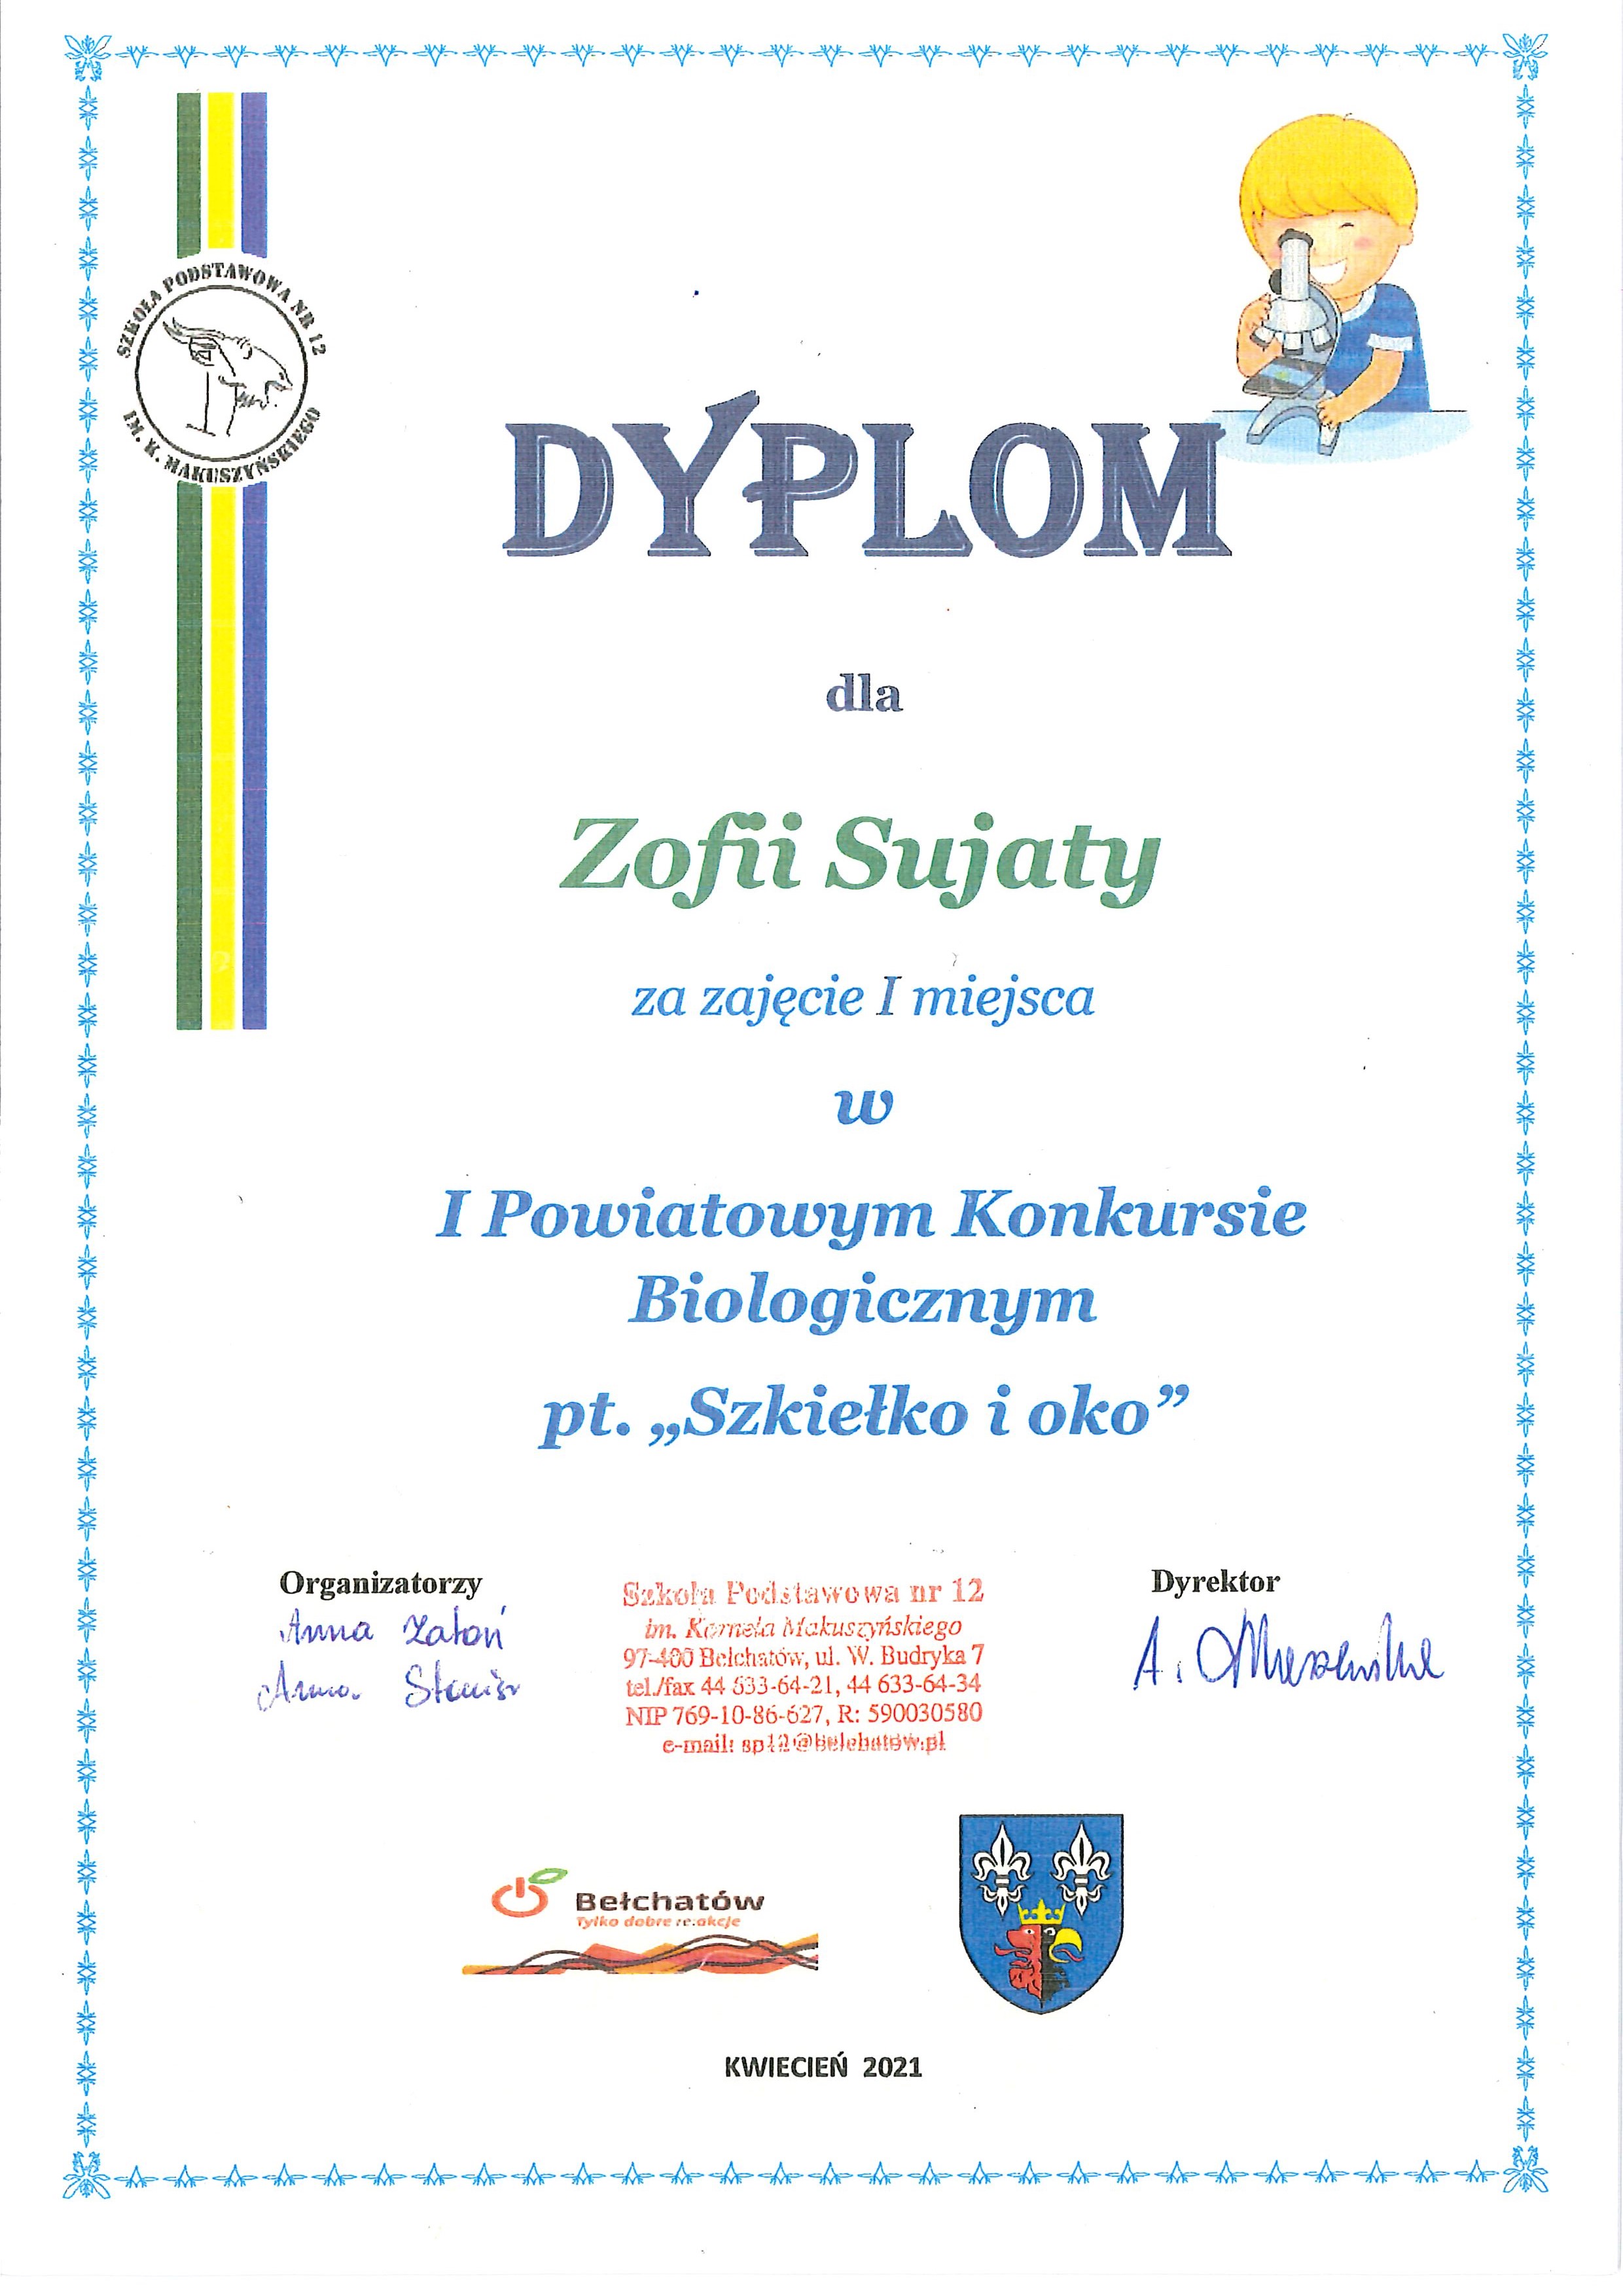 Dyplom dla Zofii Sujaty